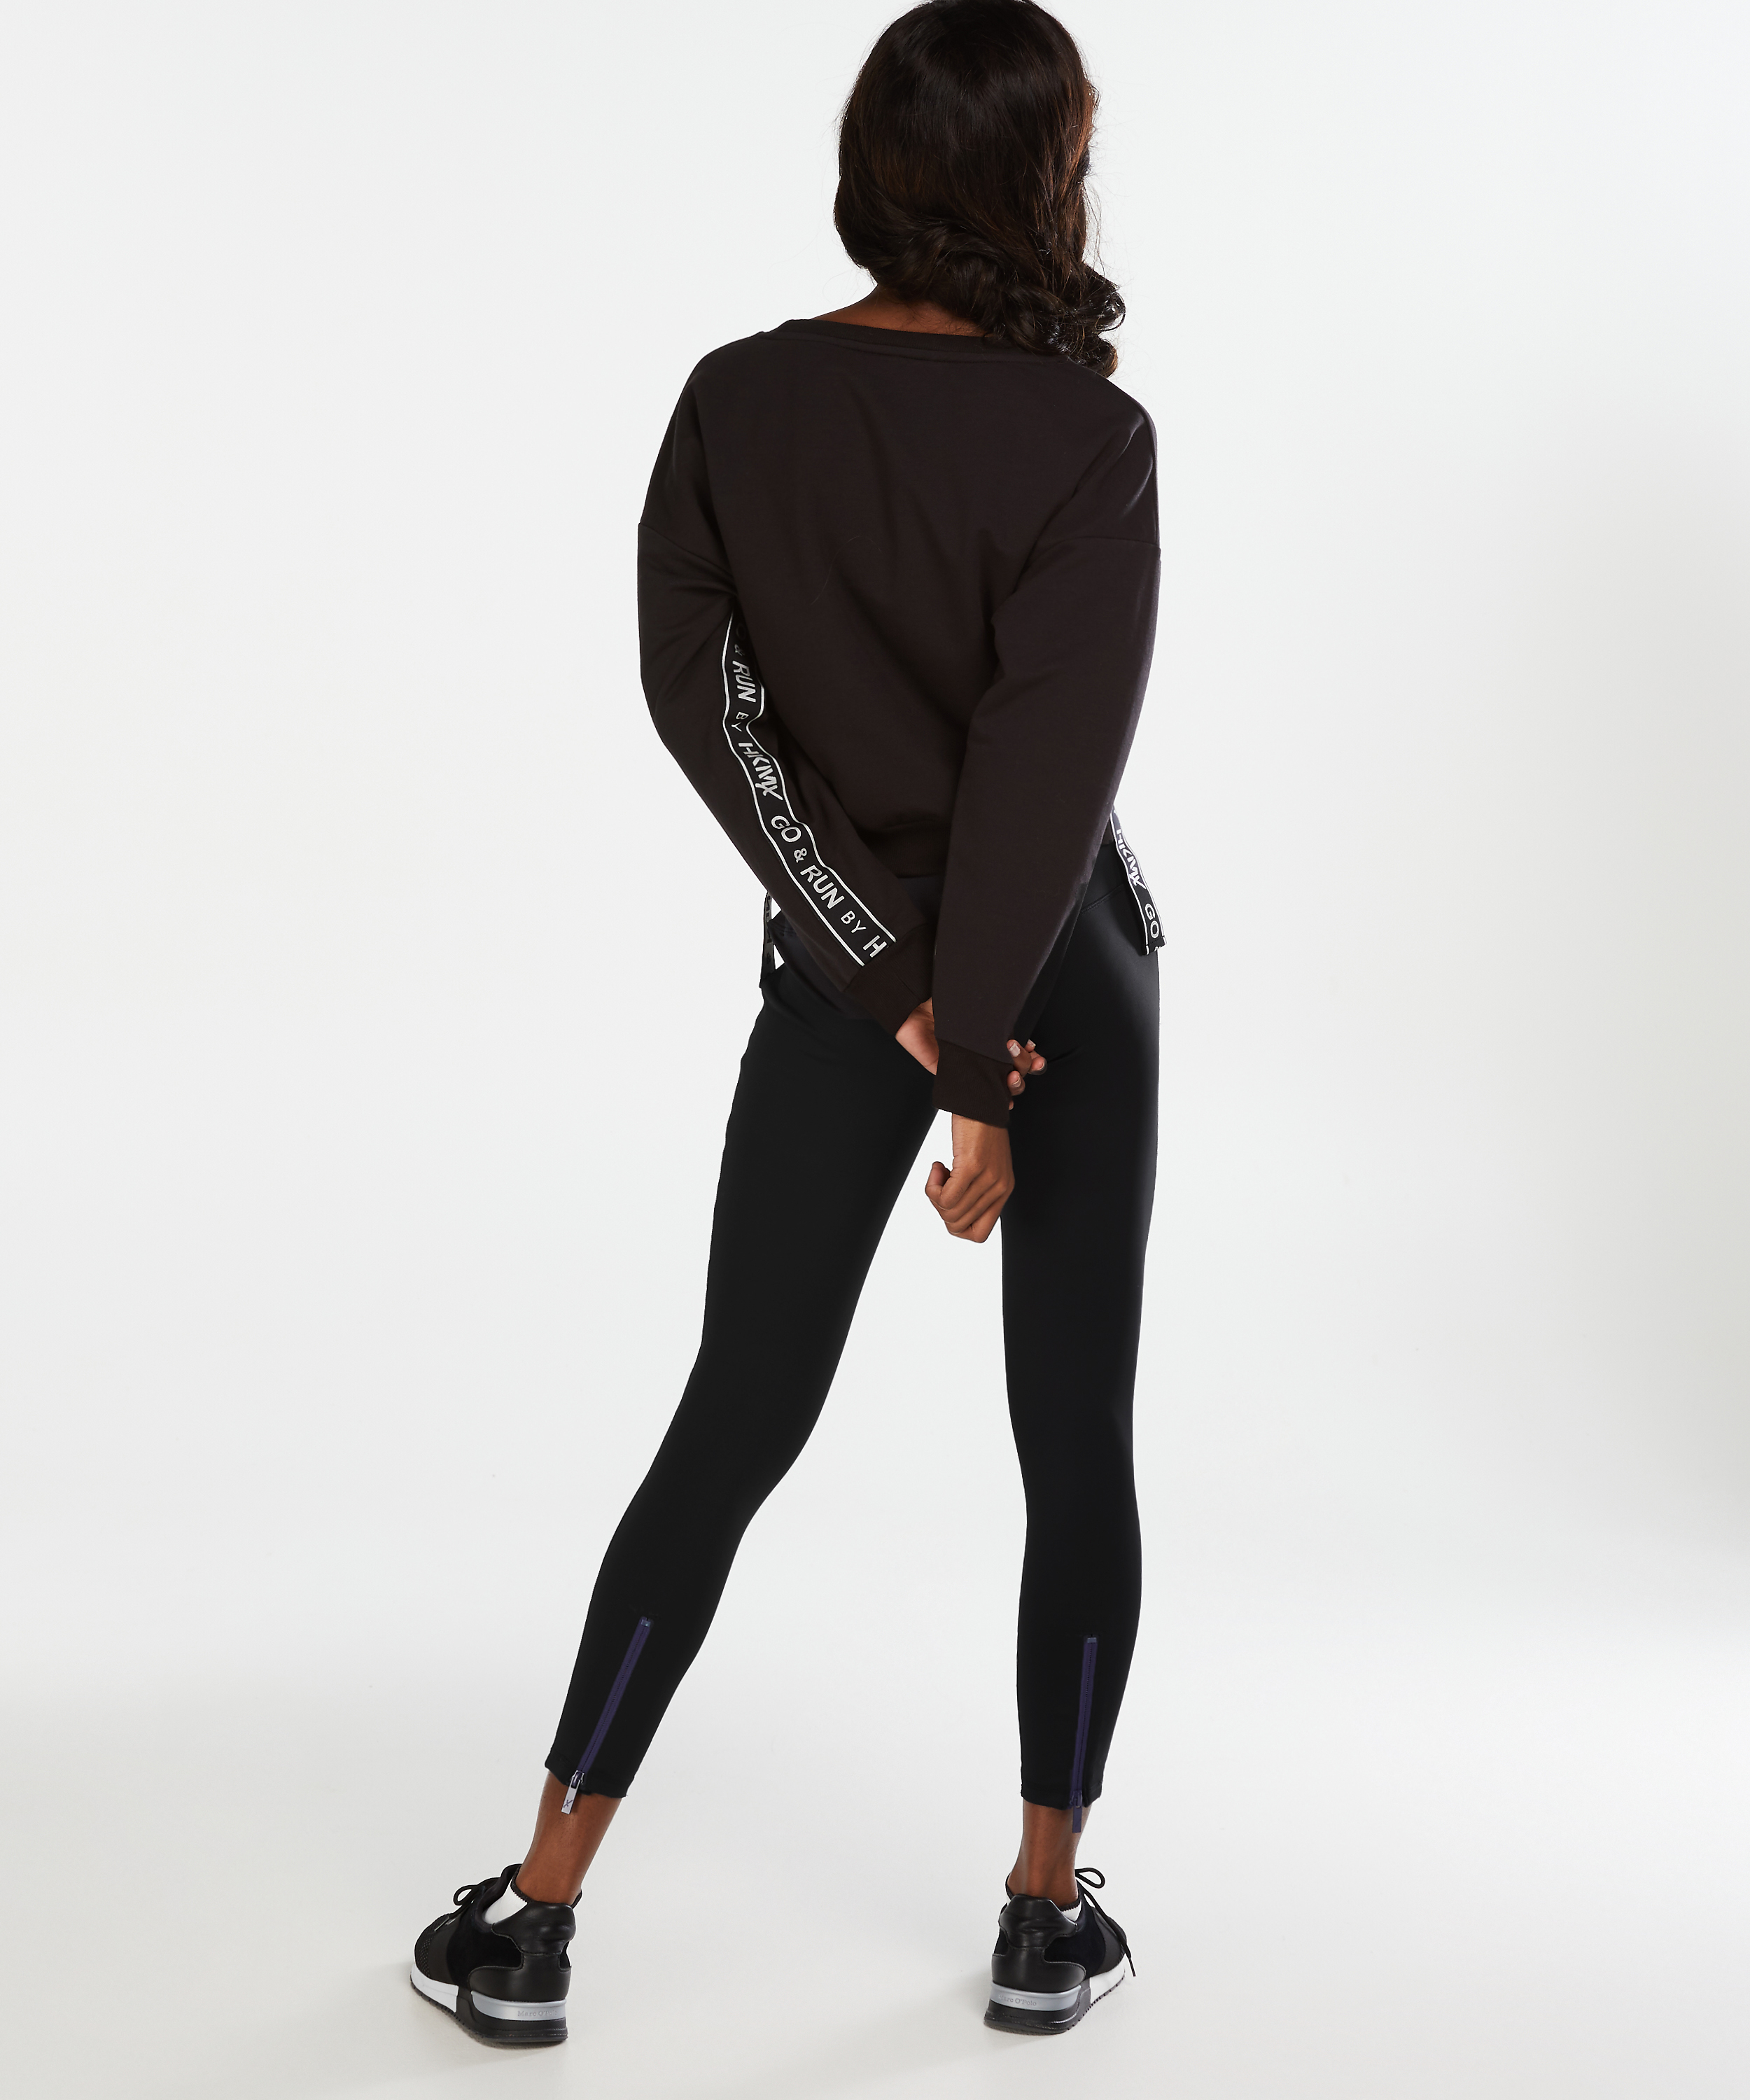 HKMX waist sport legging zip 2 for - Sports tilbud - Hunkemöller